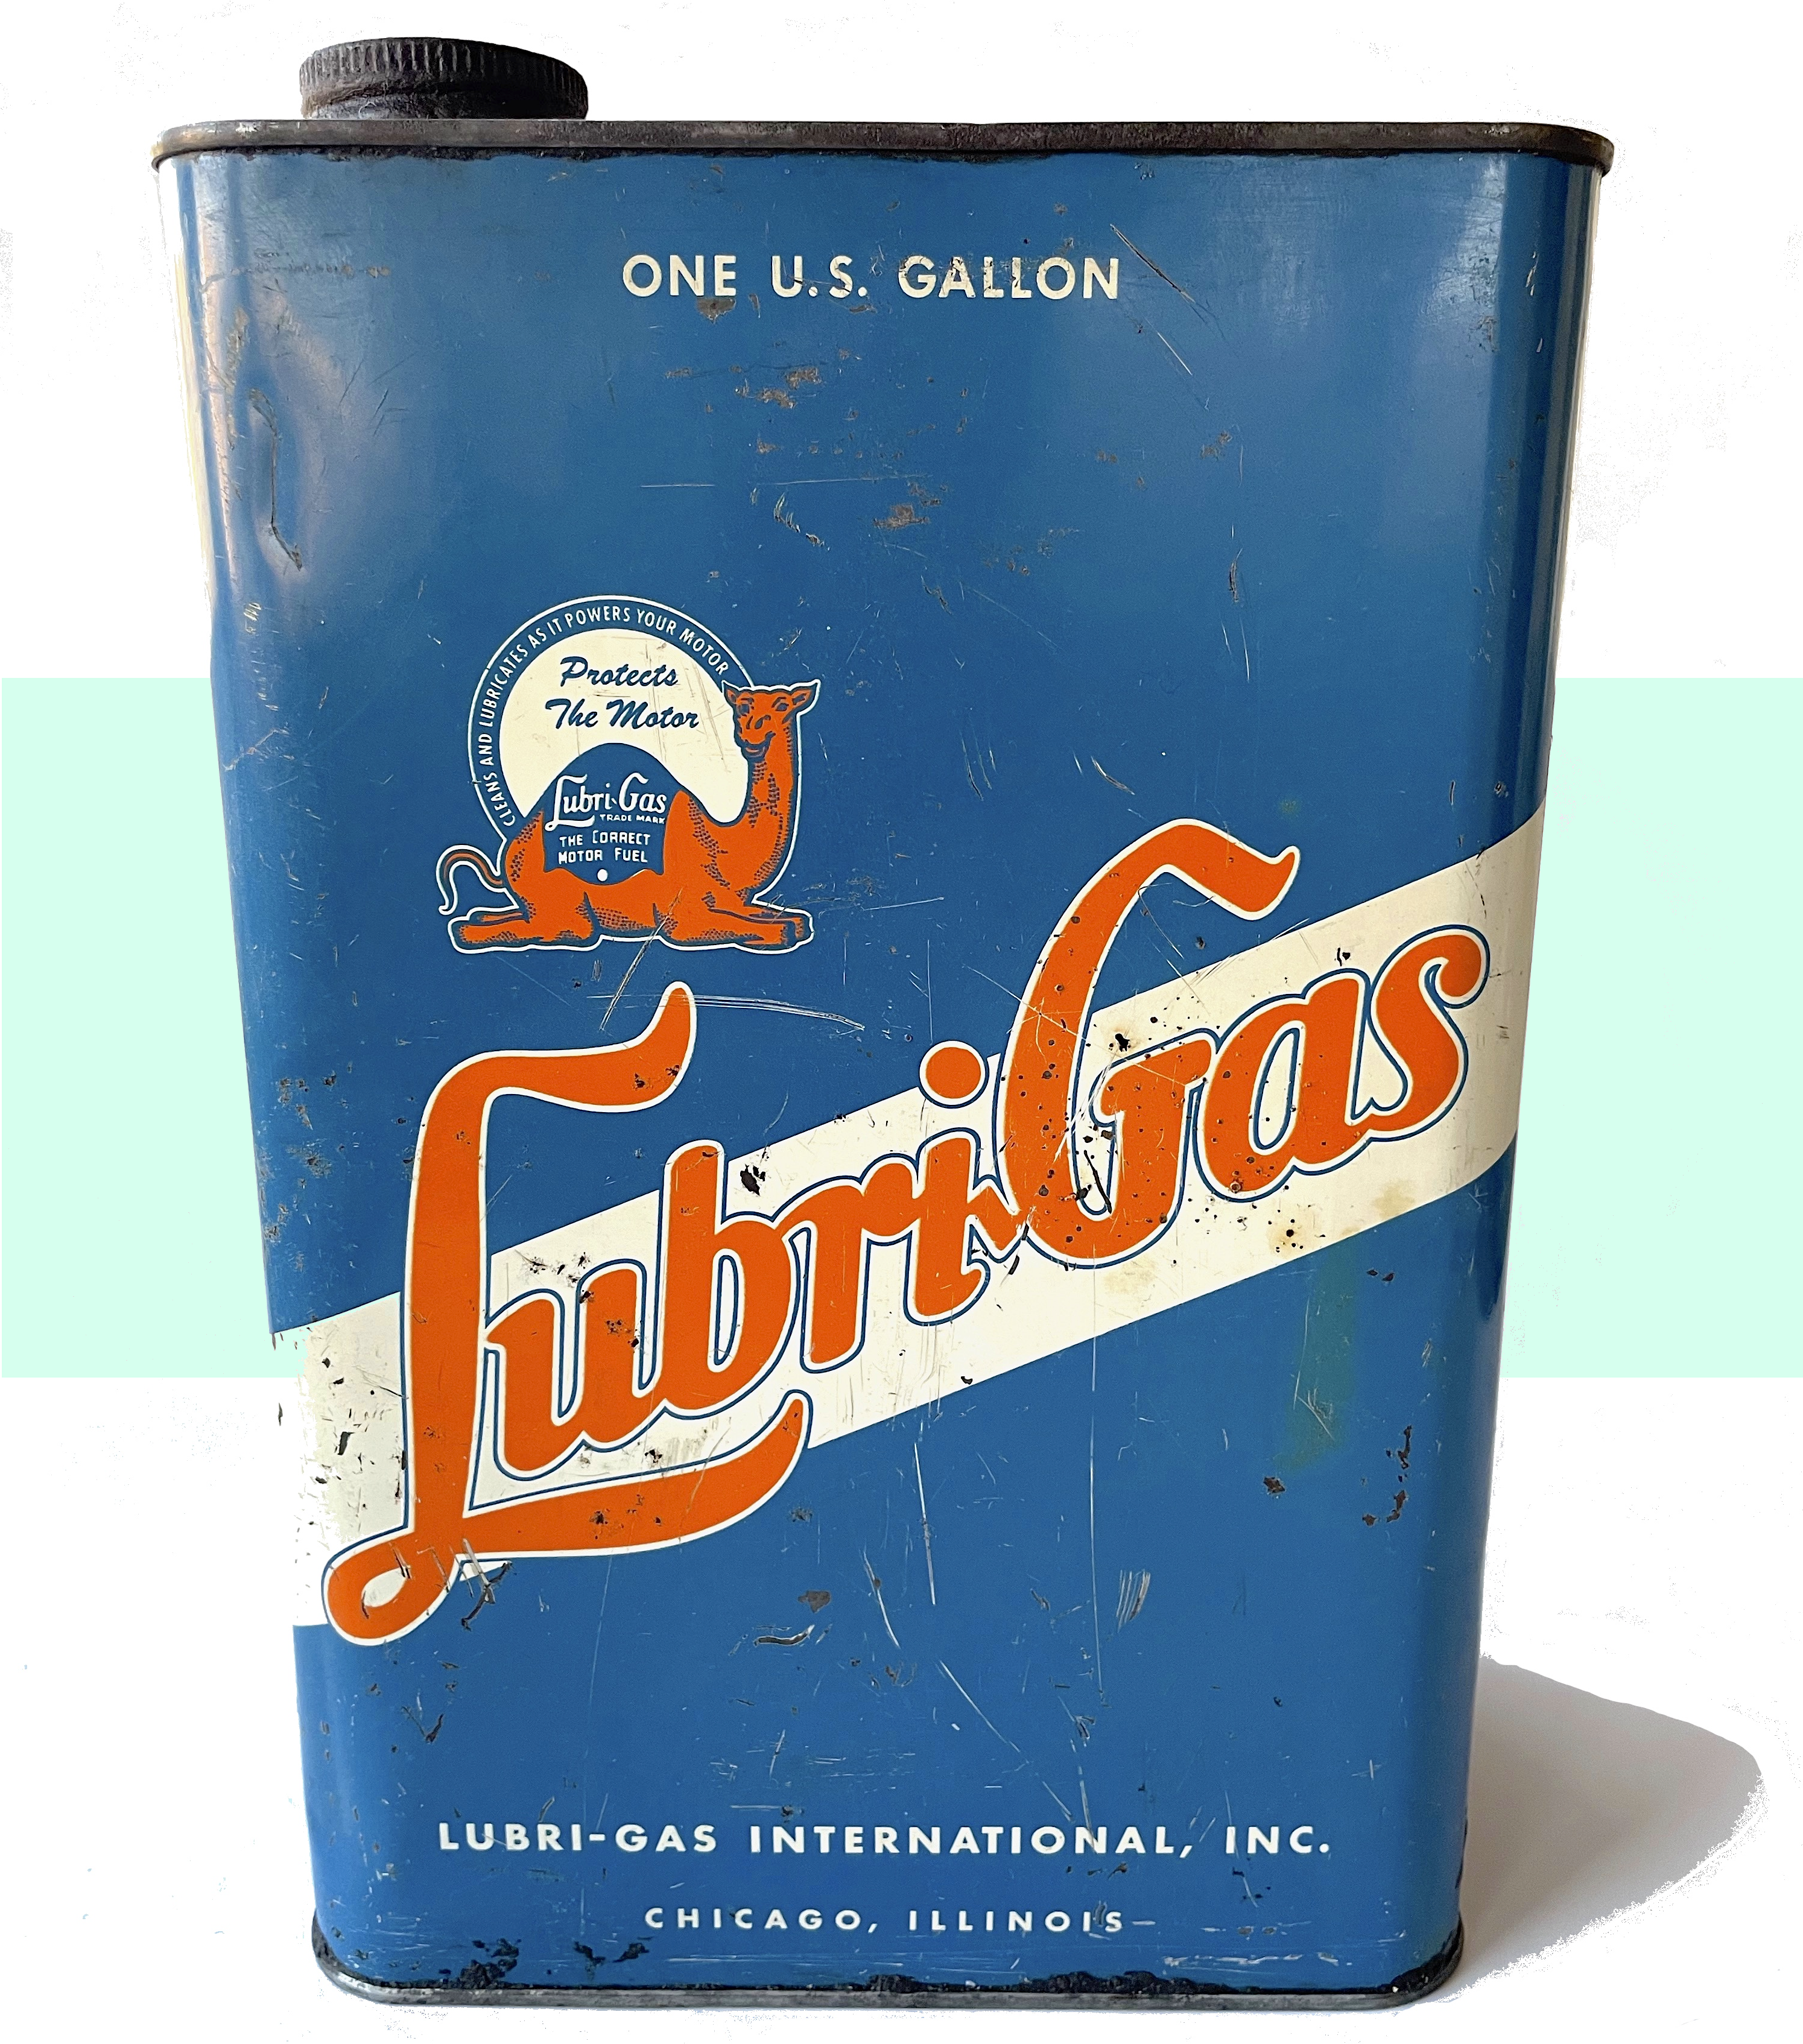 Lubri-Gas International, est. 1917